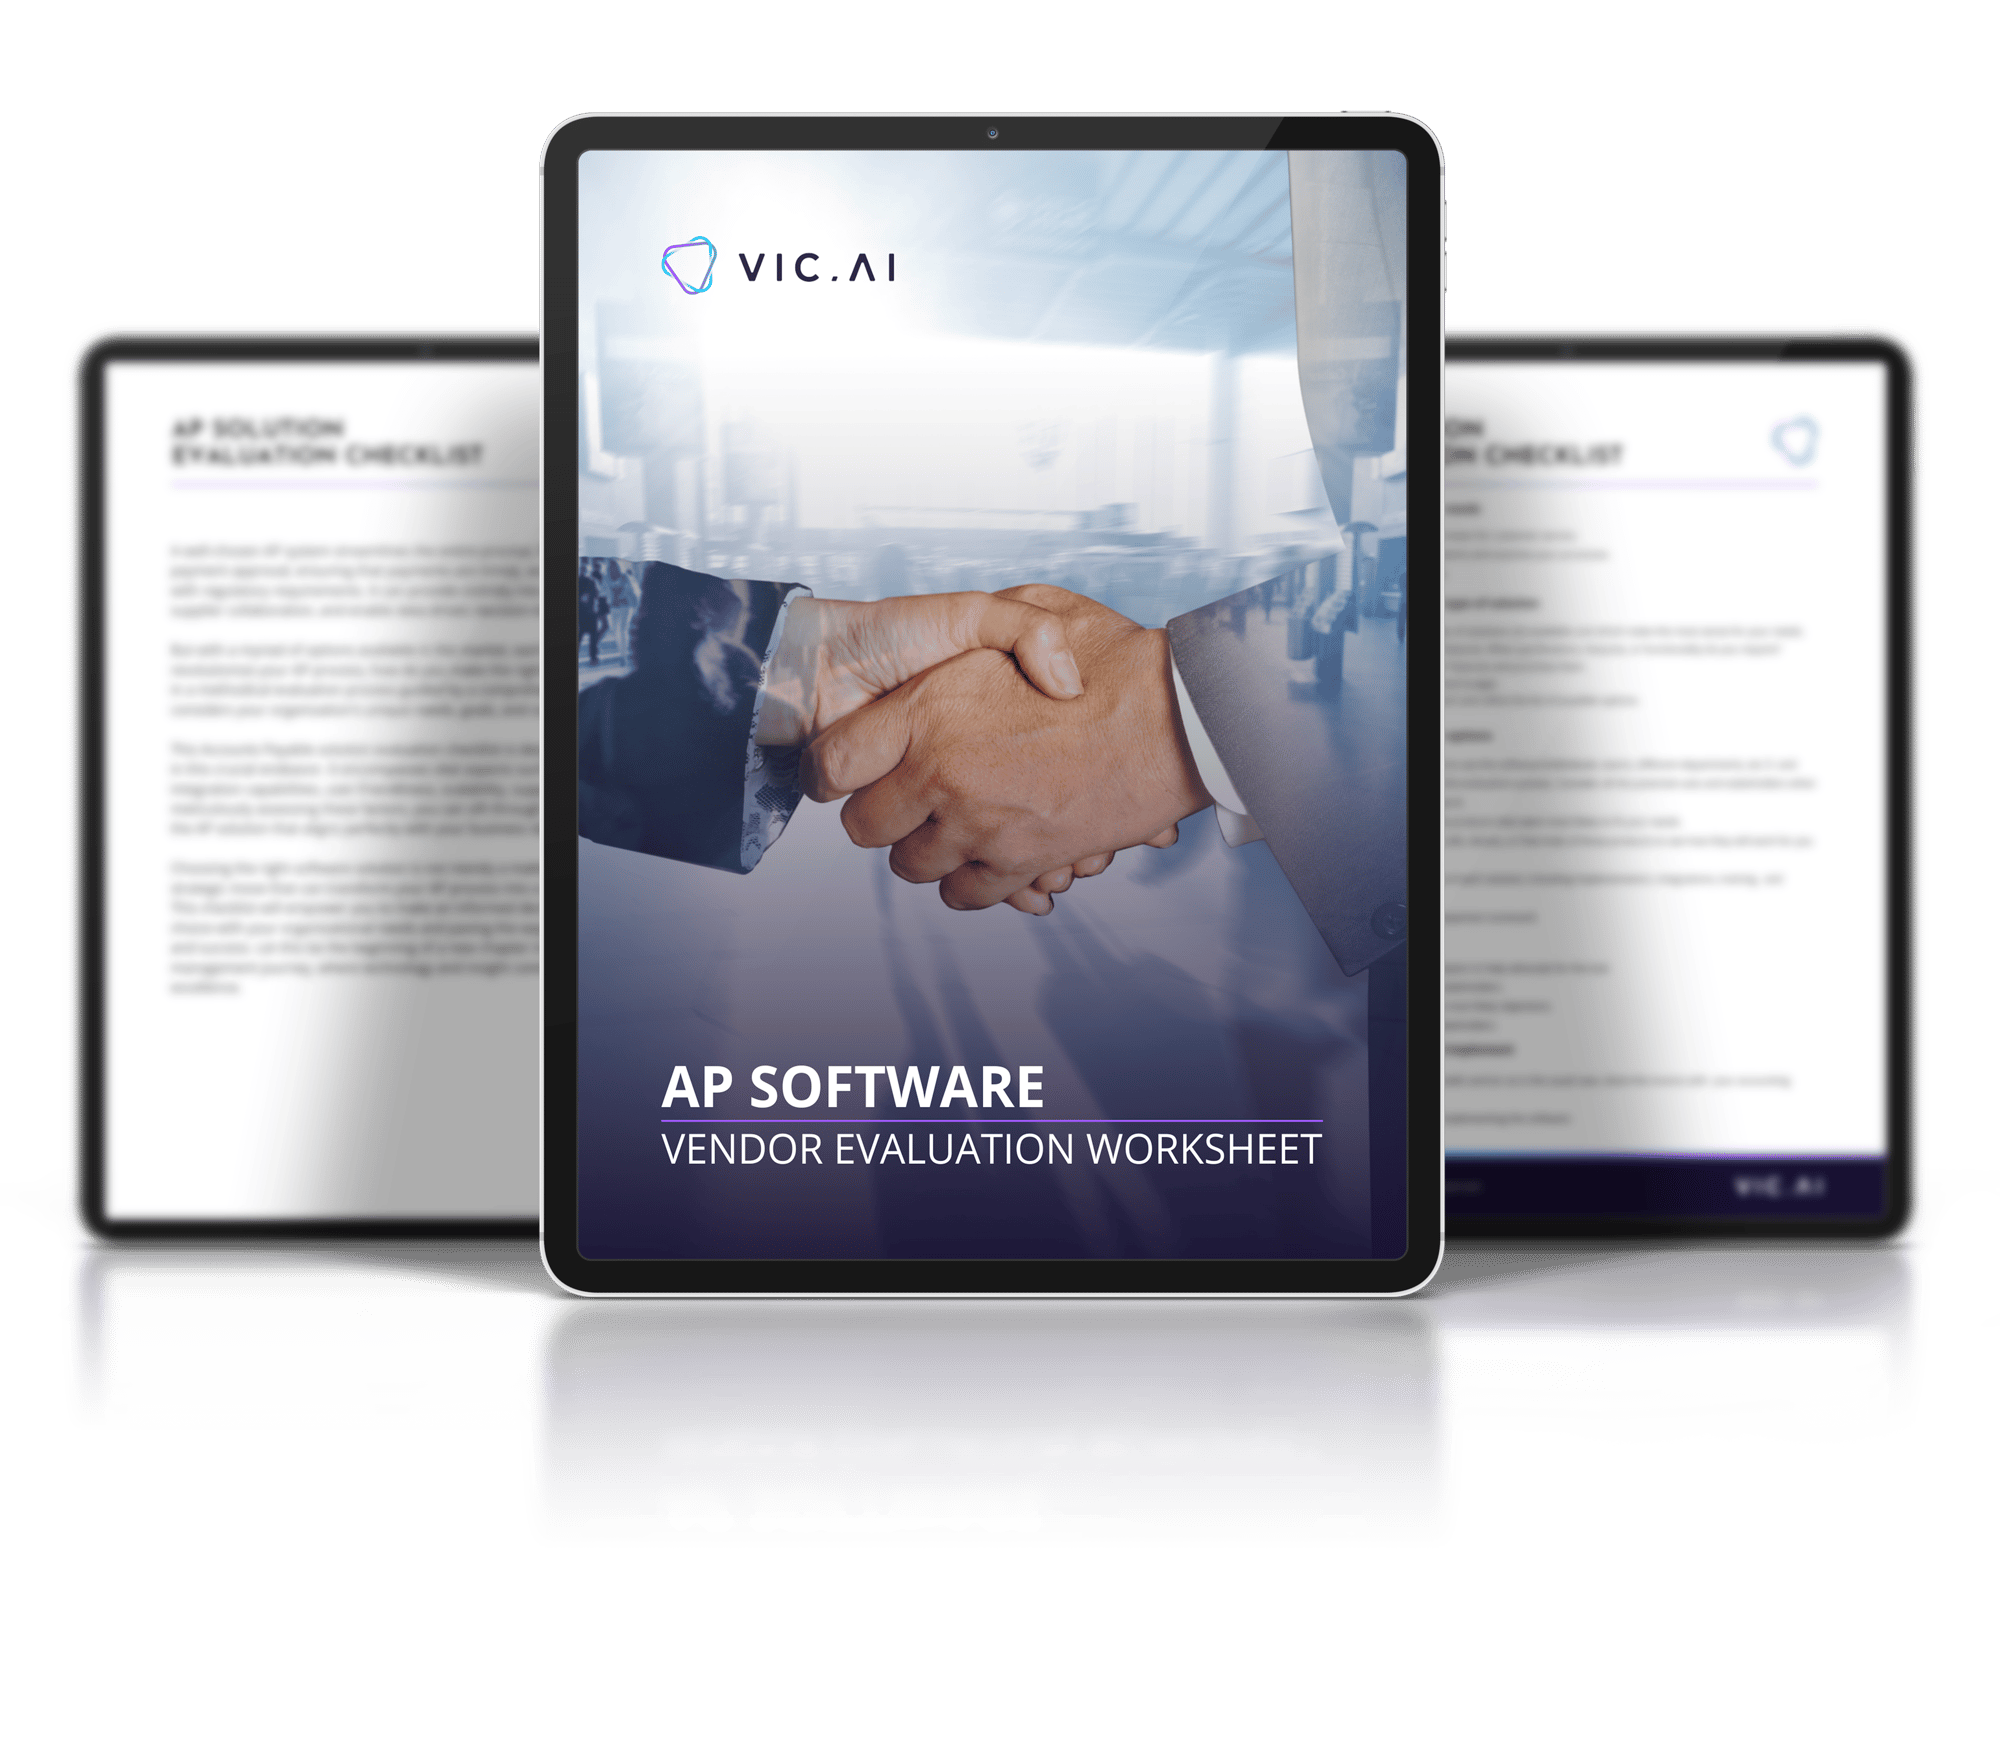 AP Software vendor evaluation guide